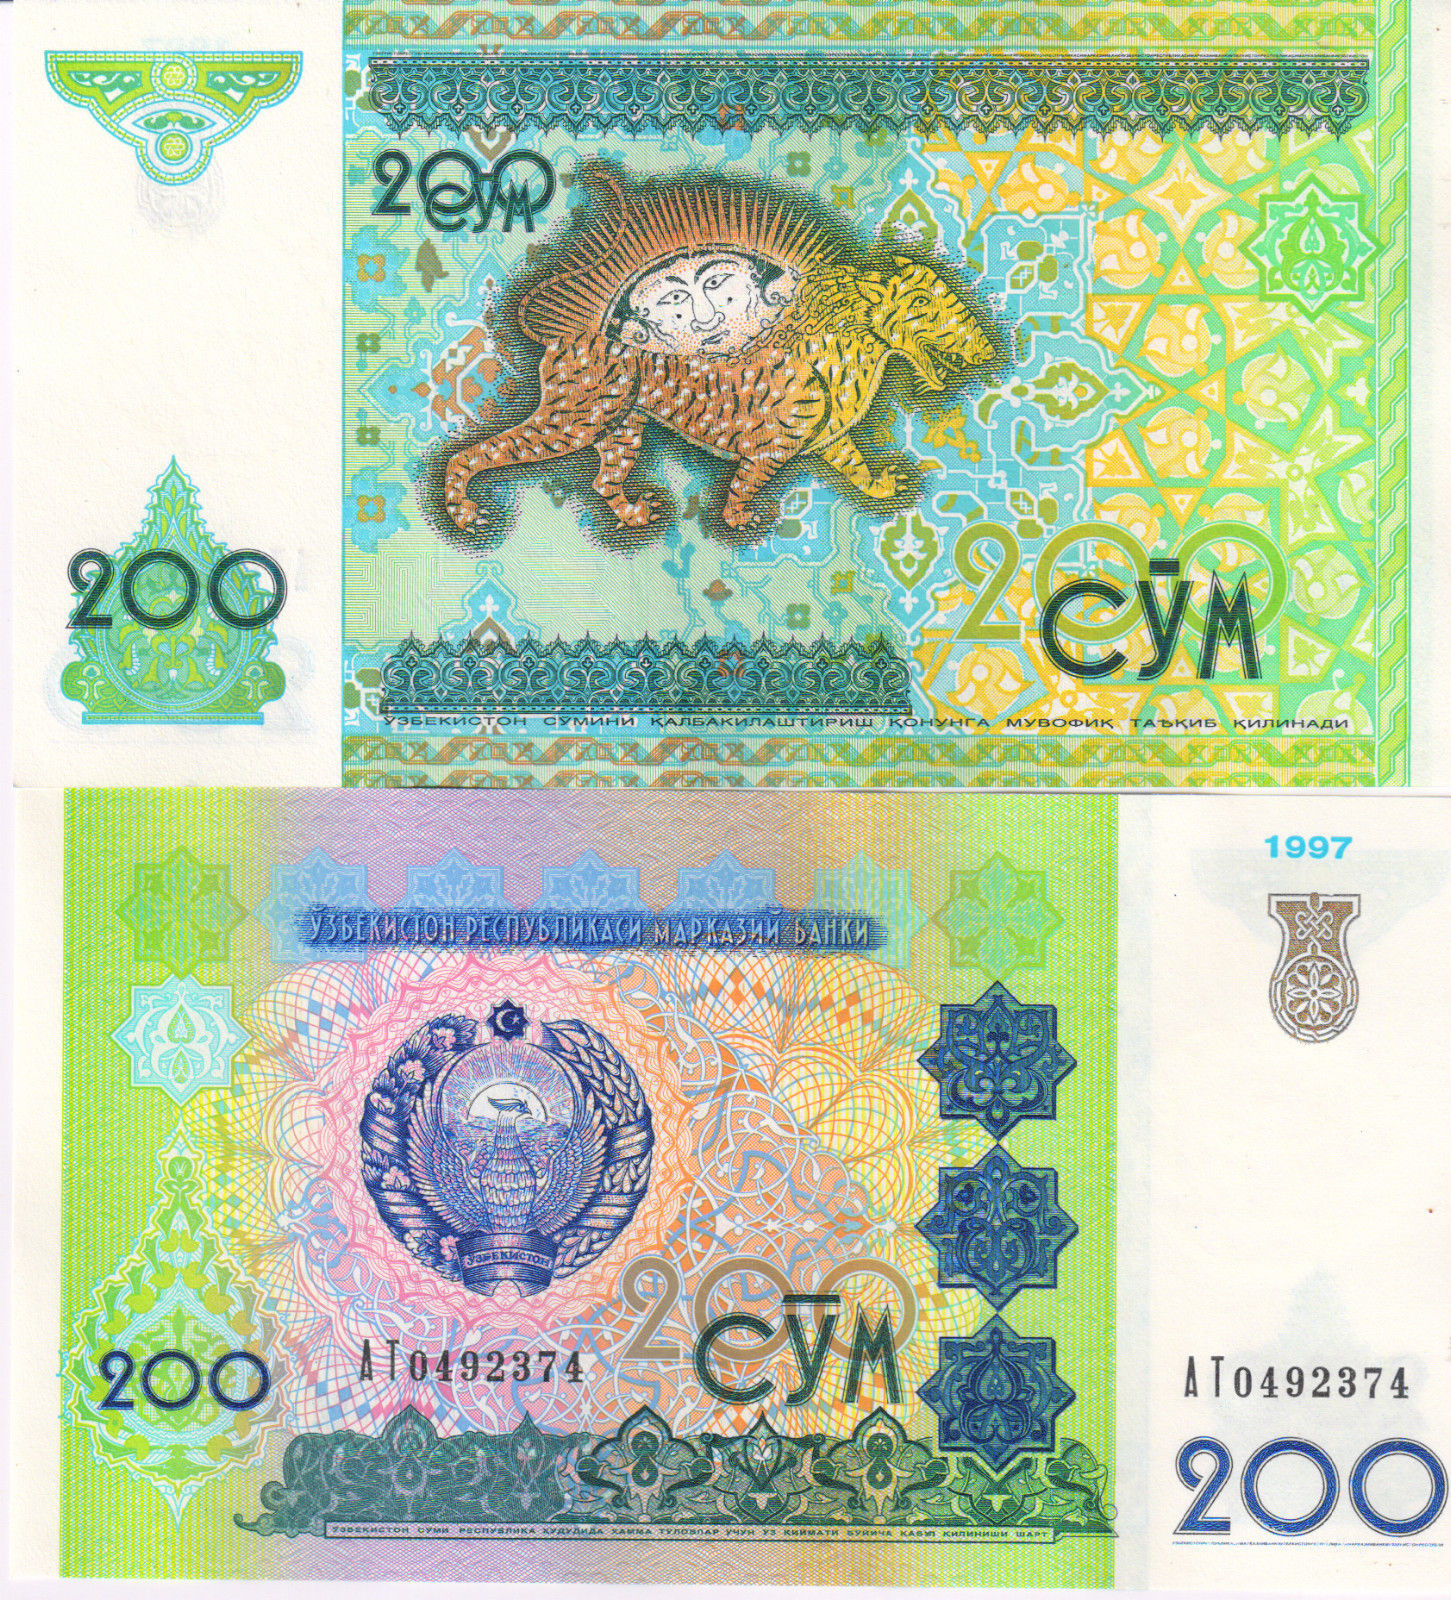 Доллар валюта сум узбекистан. Деньги Узбекистана. Узбекский сум. Валюта Узбекистана. Купюры сум Узбекистан.